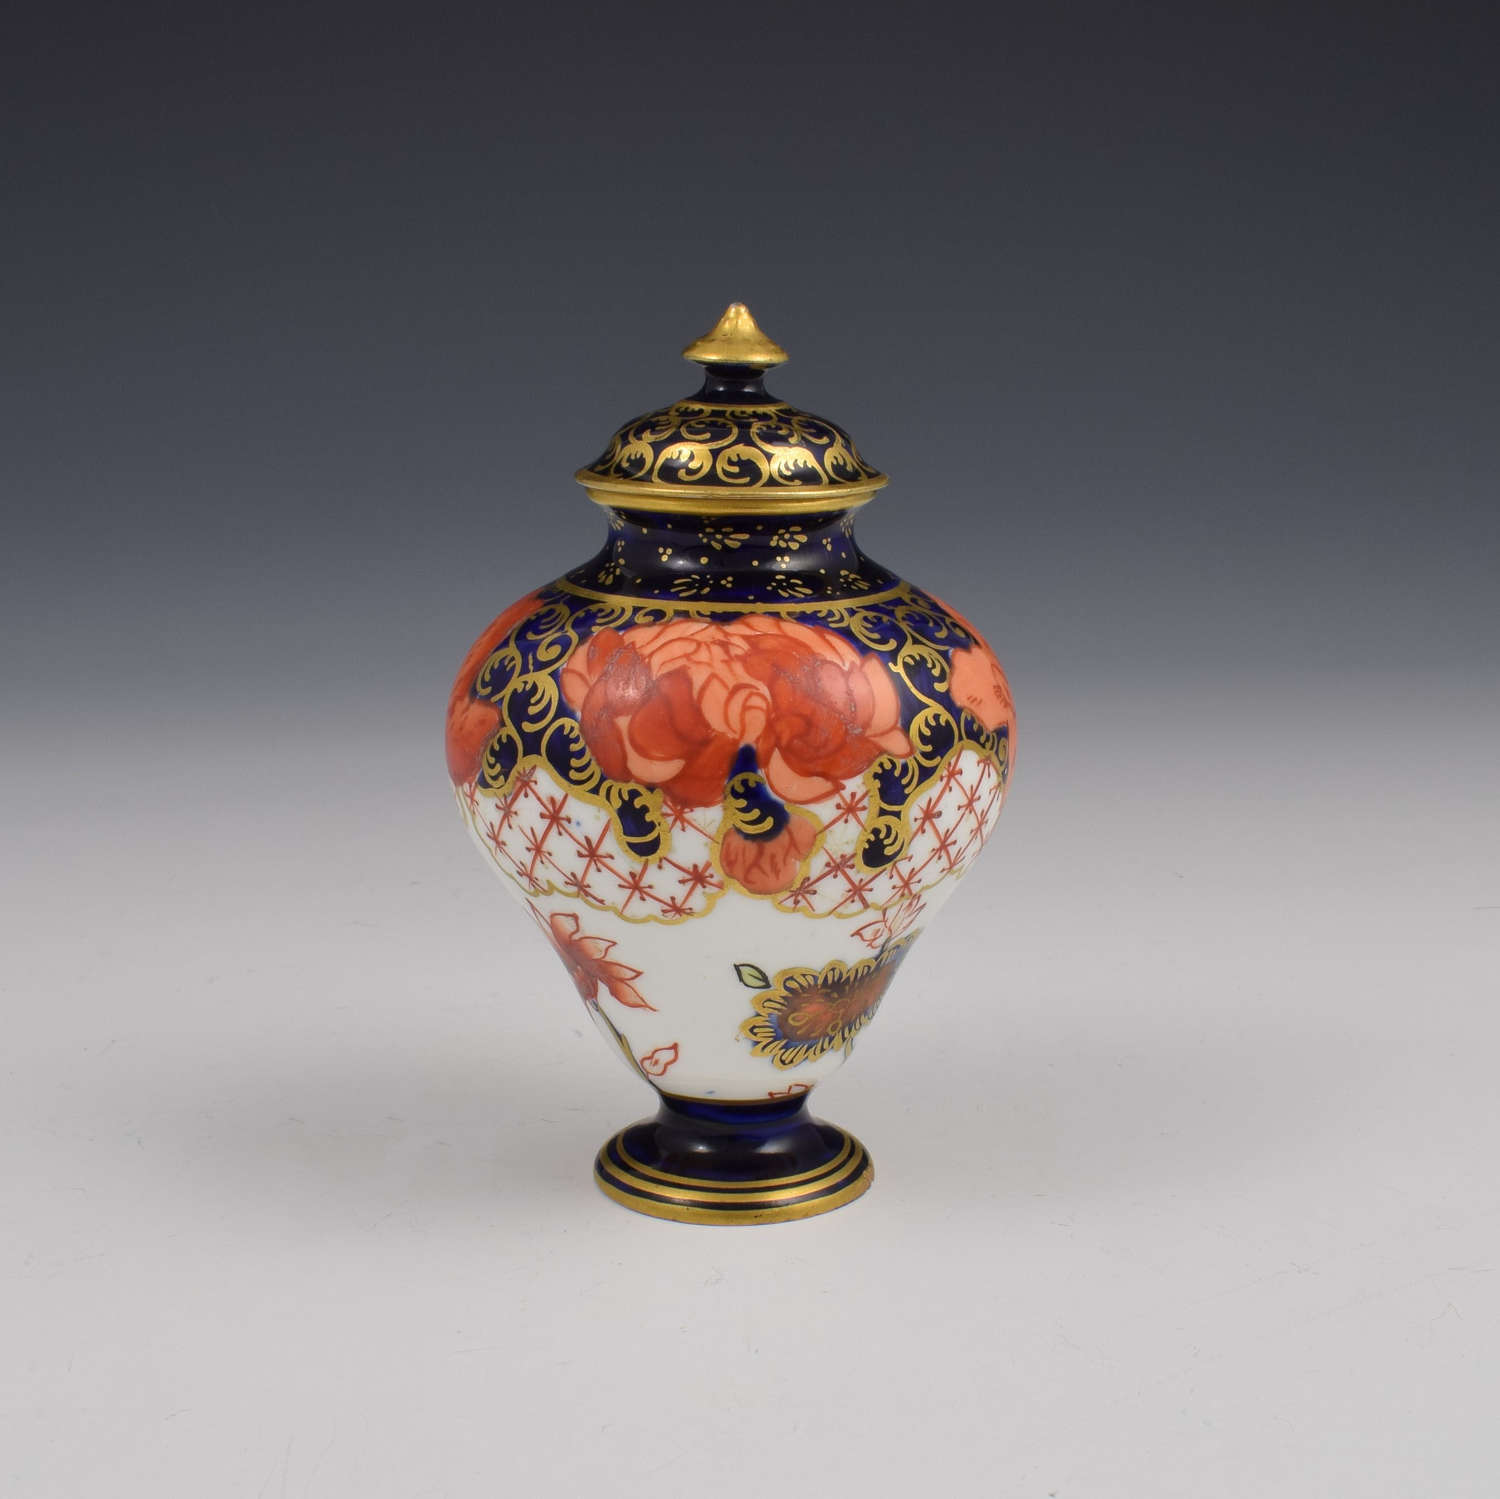 Antique Edwardian Royal Crown Derby Miniature Vase & Cover 2444